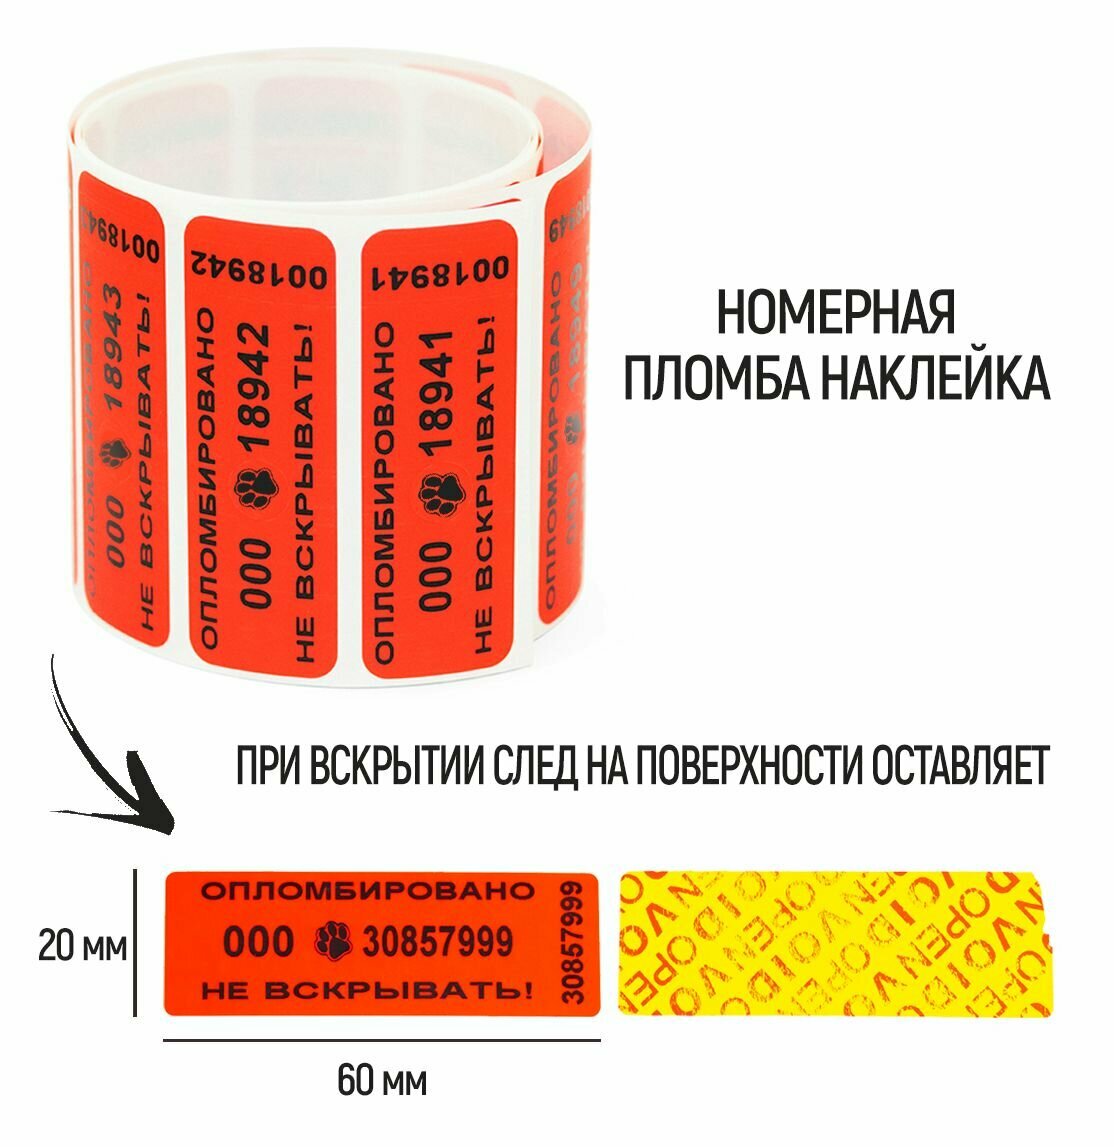 Пломбы наклейки 60 х 20 мм, красные, со следом (упаковка 500 штук)